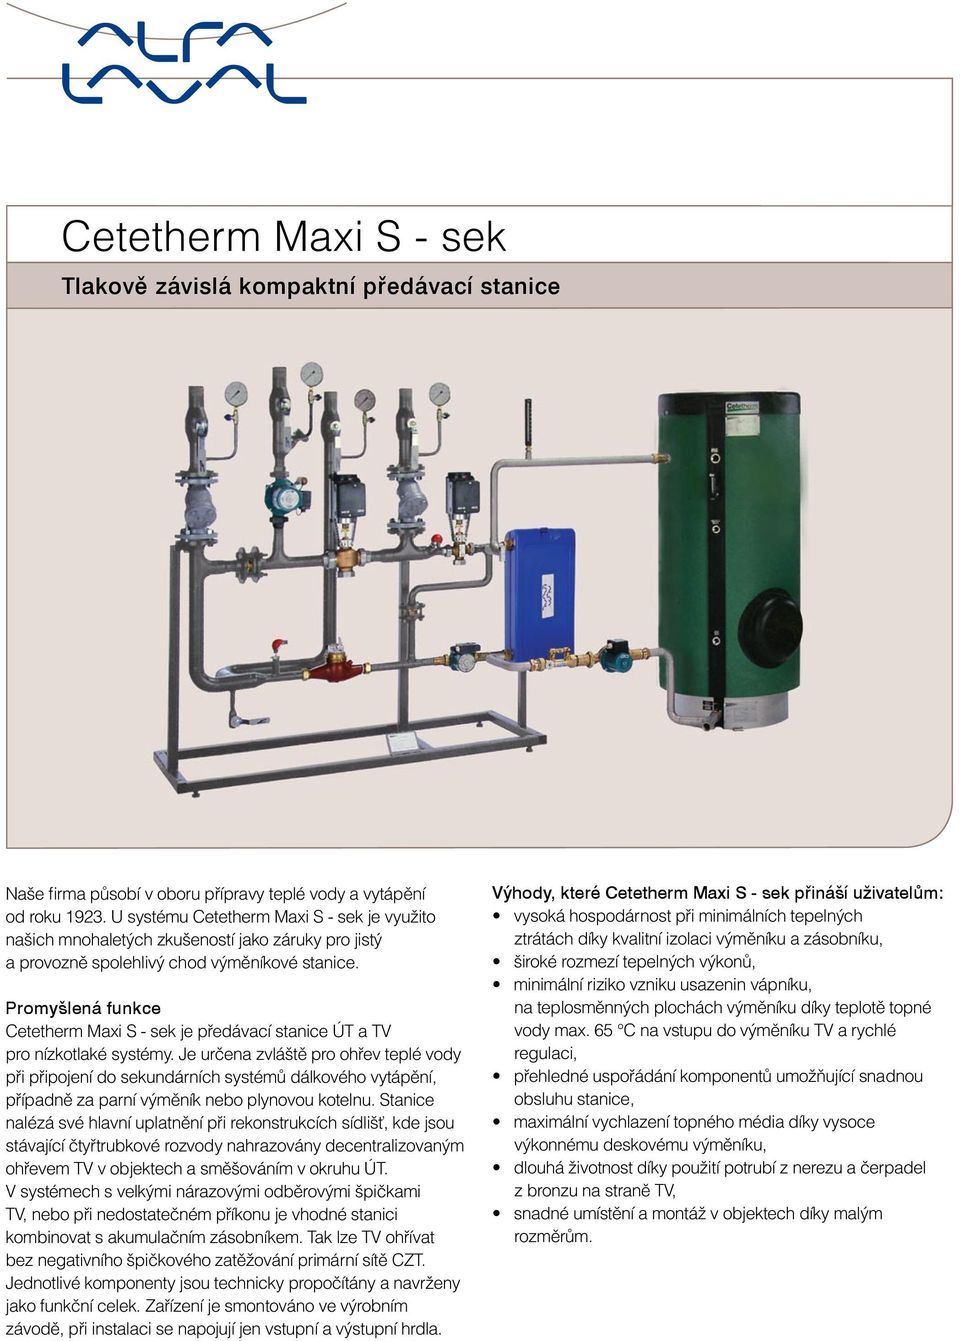 Promyšlená funkce Cetetherm Maxi S - sek je předávací stanice a pro nízkotlaké systémy.